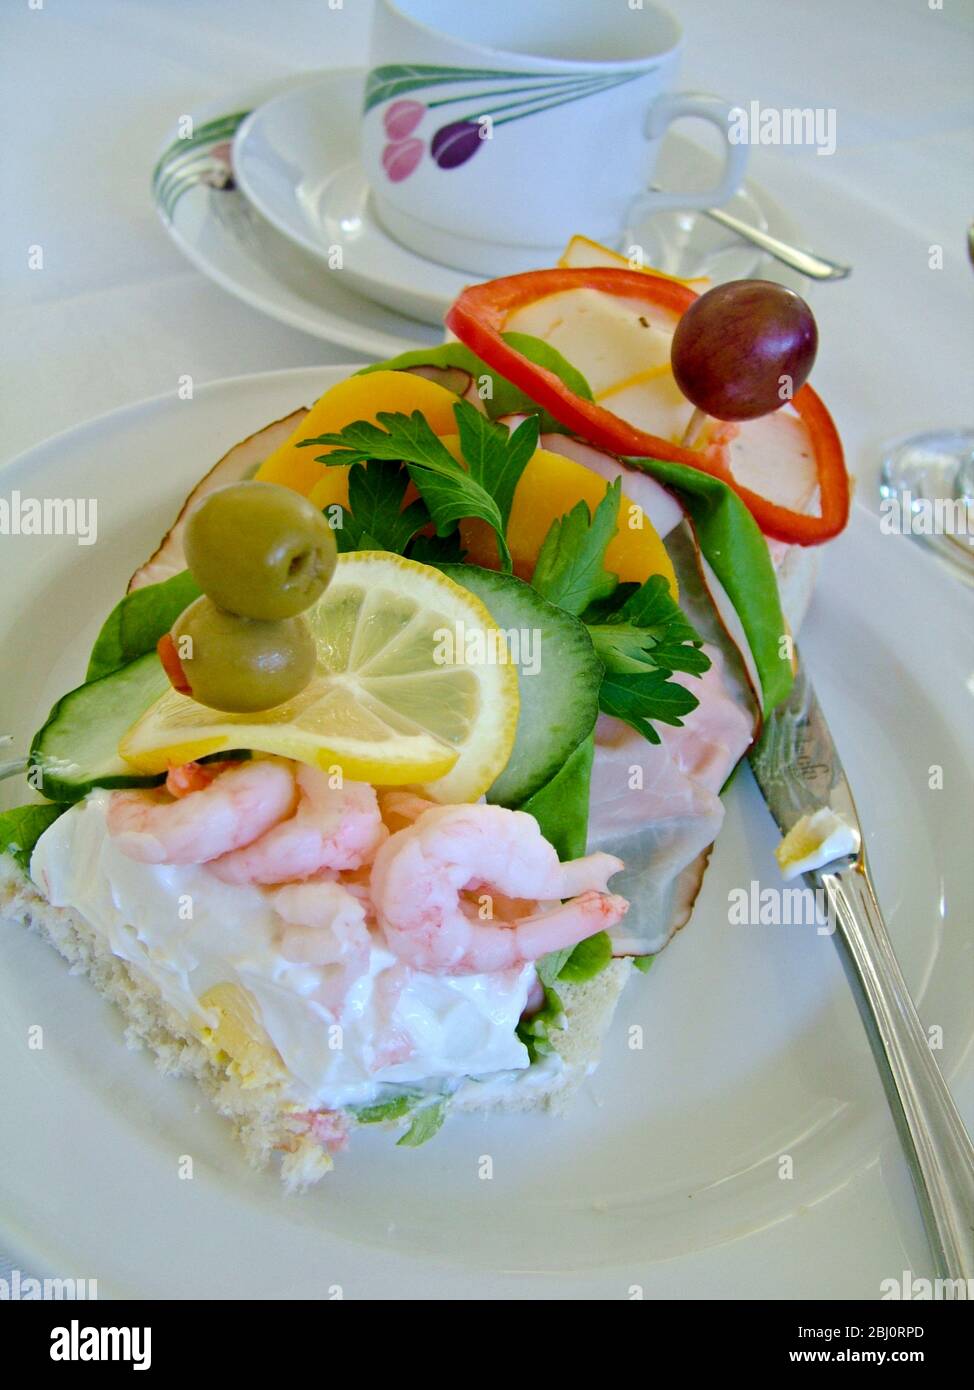 Un sándwich sueco abierto servido como una comida ligera en una recepción. Usted comienza en un extremo con la mayonesa de gambas, el trabajo a través del jamón y ensalada, así que Foto de stock